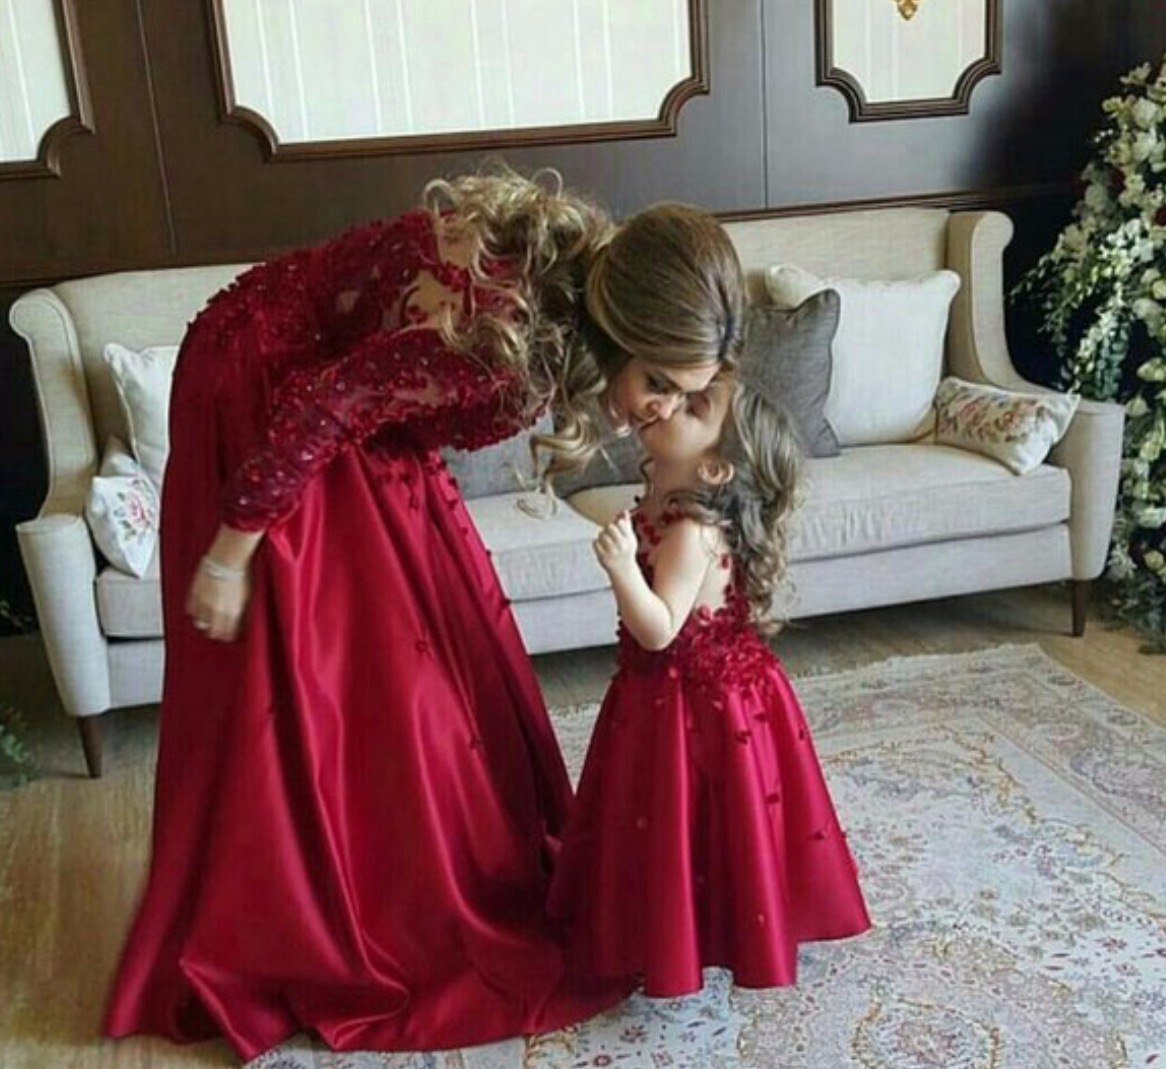 Дочка заметила маму. Шикарные платья мама и дочка. Мама и дочка в красных платьях. Шикарные платья мама дочь. Красивые платья на дочку и маму.